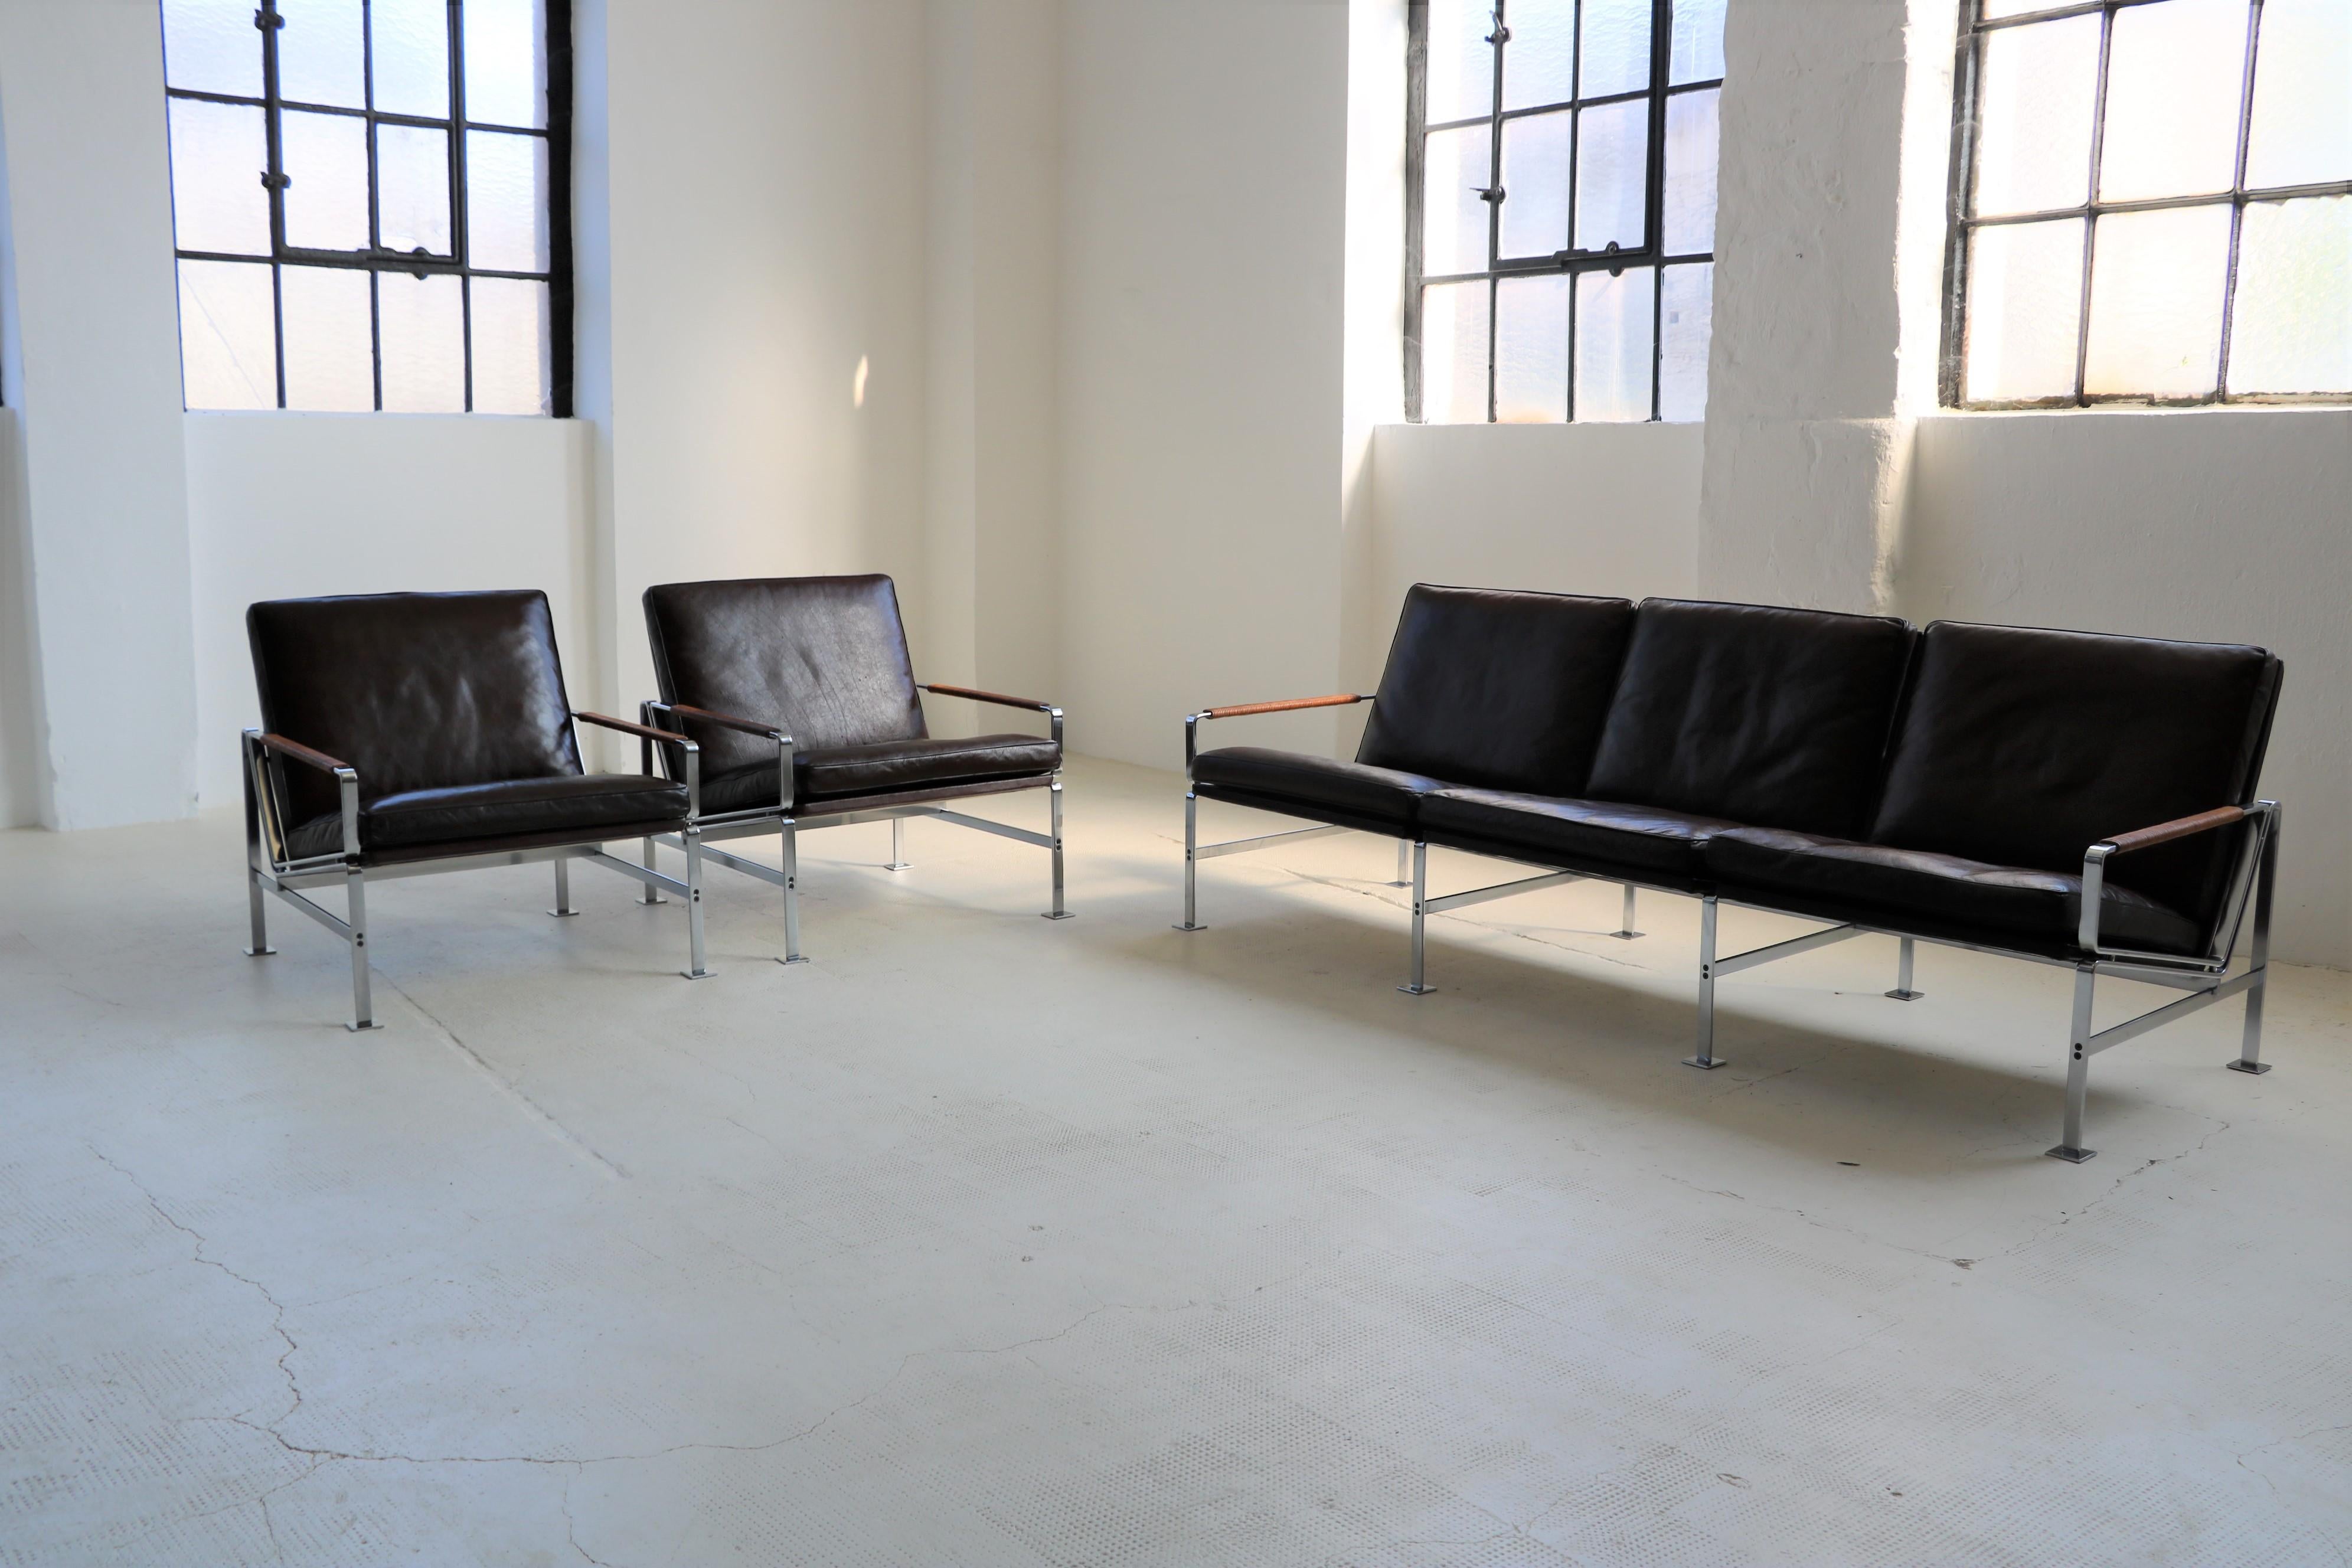 Une belle paire de fauteuils par les célèbres designers Preben Fabricius et Jorgen Kastholm pour Kill International. 

Châssis en acier plat, revêtement en cuir brun foncé, accoudoirs en cuir brun, modèle FK 6720.

Ce set est une exécution précoce